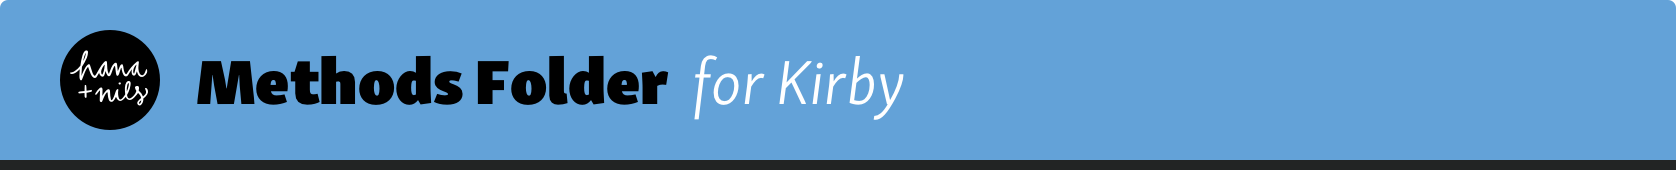 Kirby Methods Folder